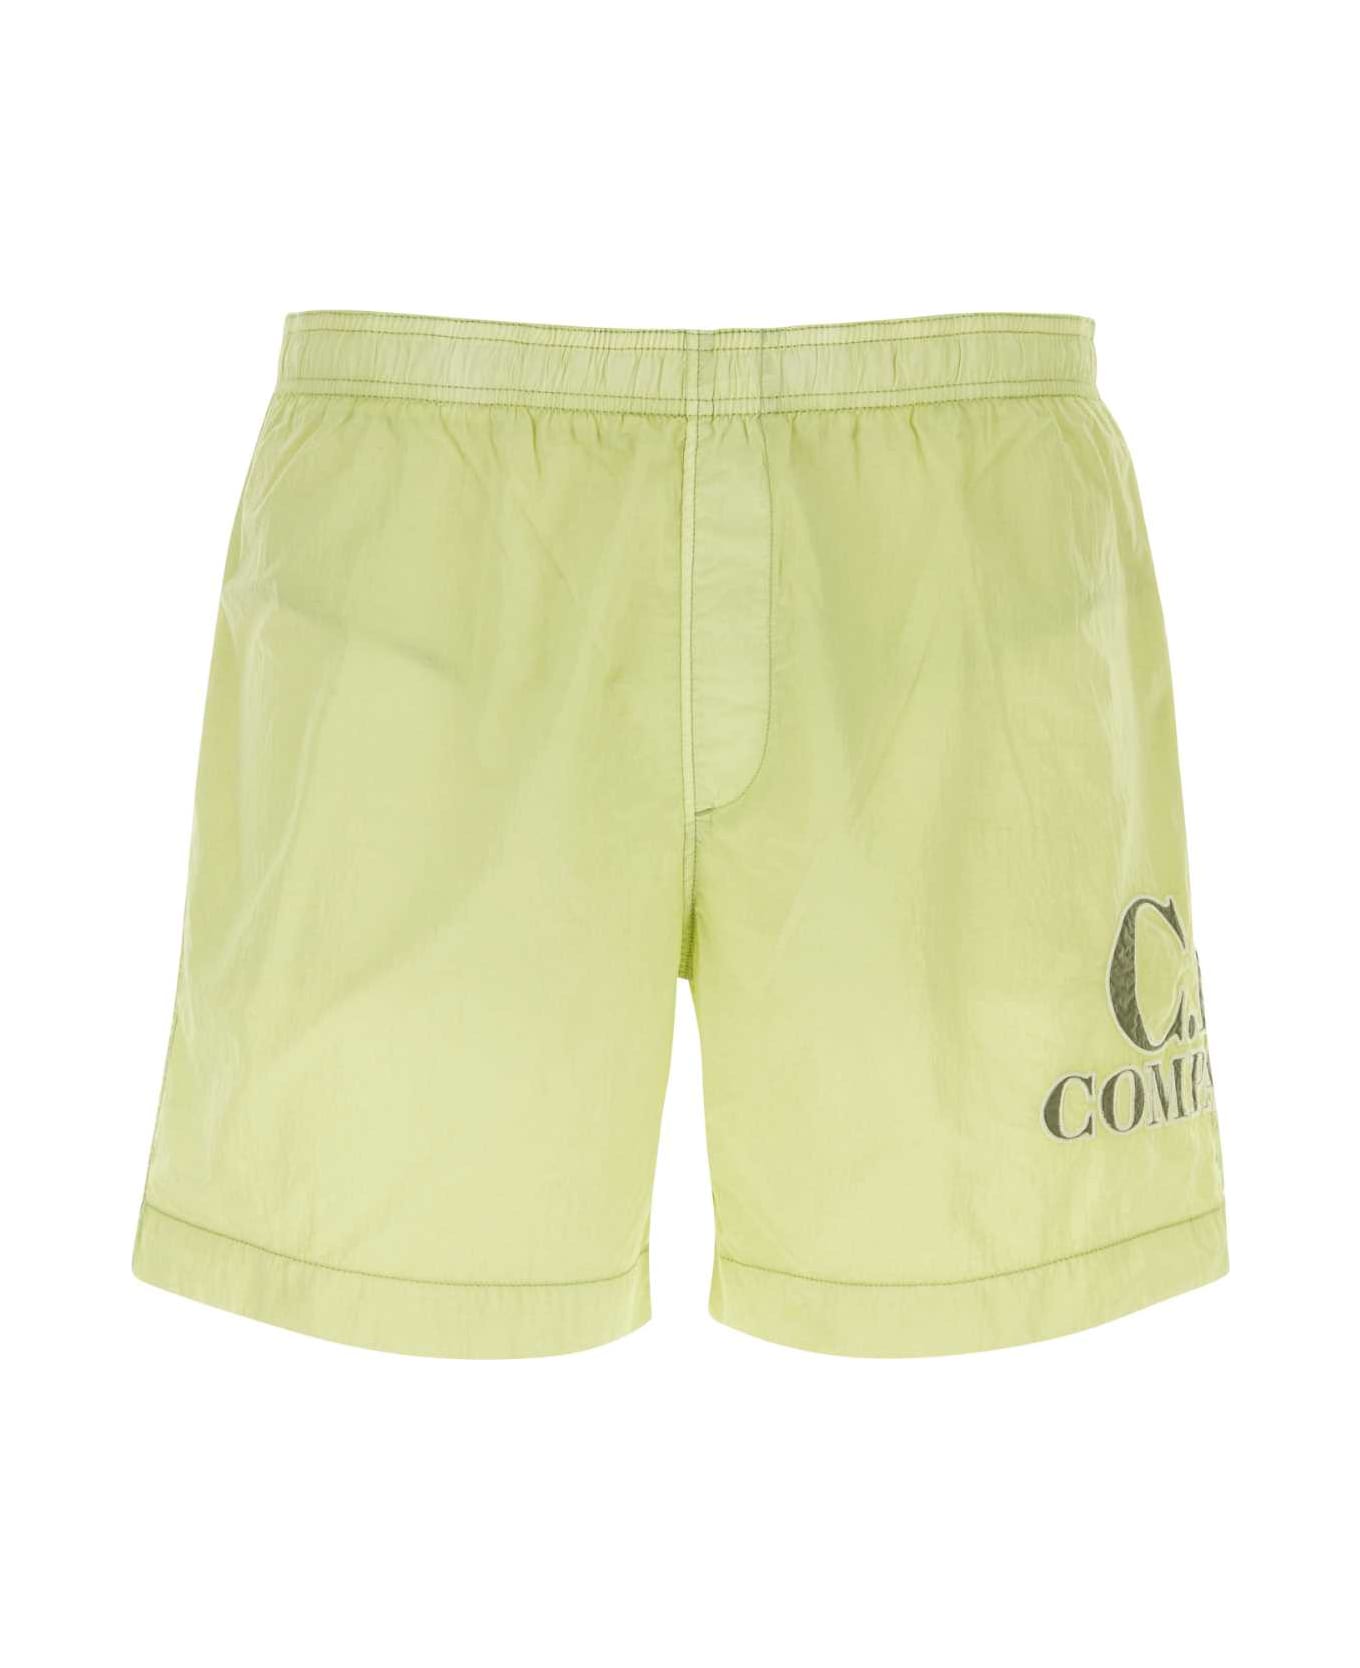 C.P. Company Lime Green Nylon Swimming Shorts - WHITEPEAR 水着